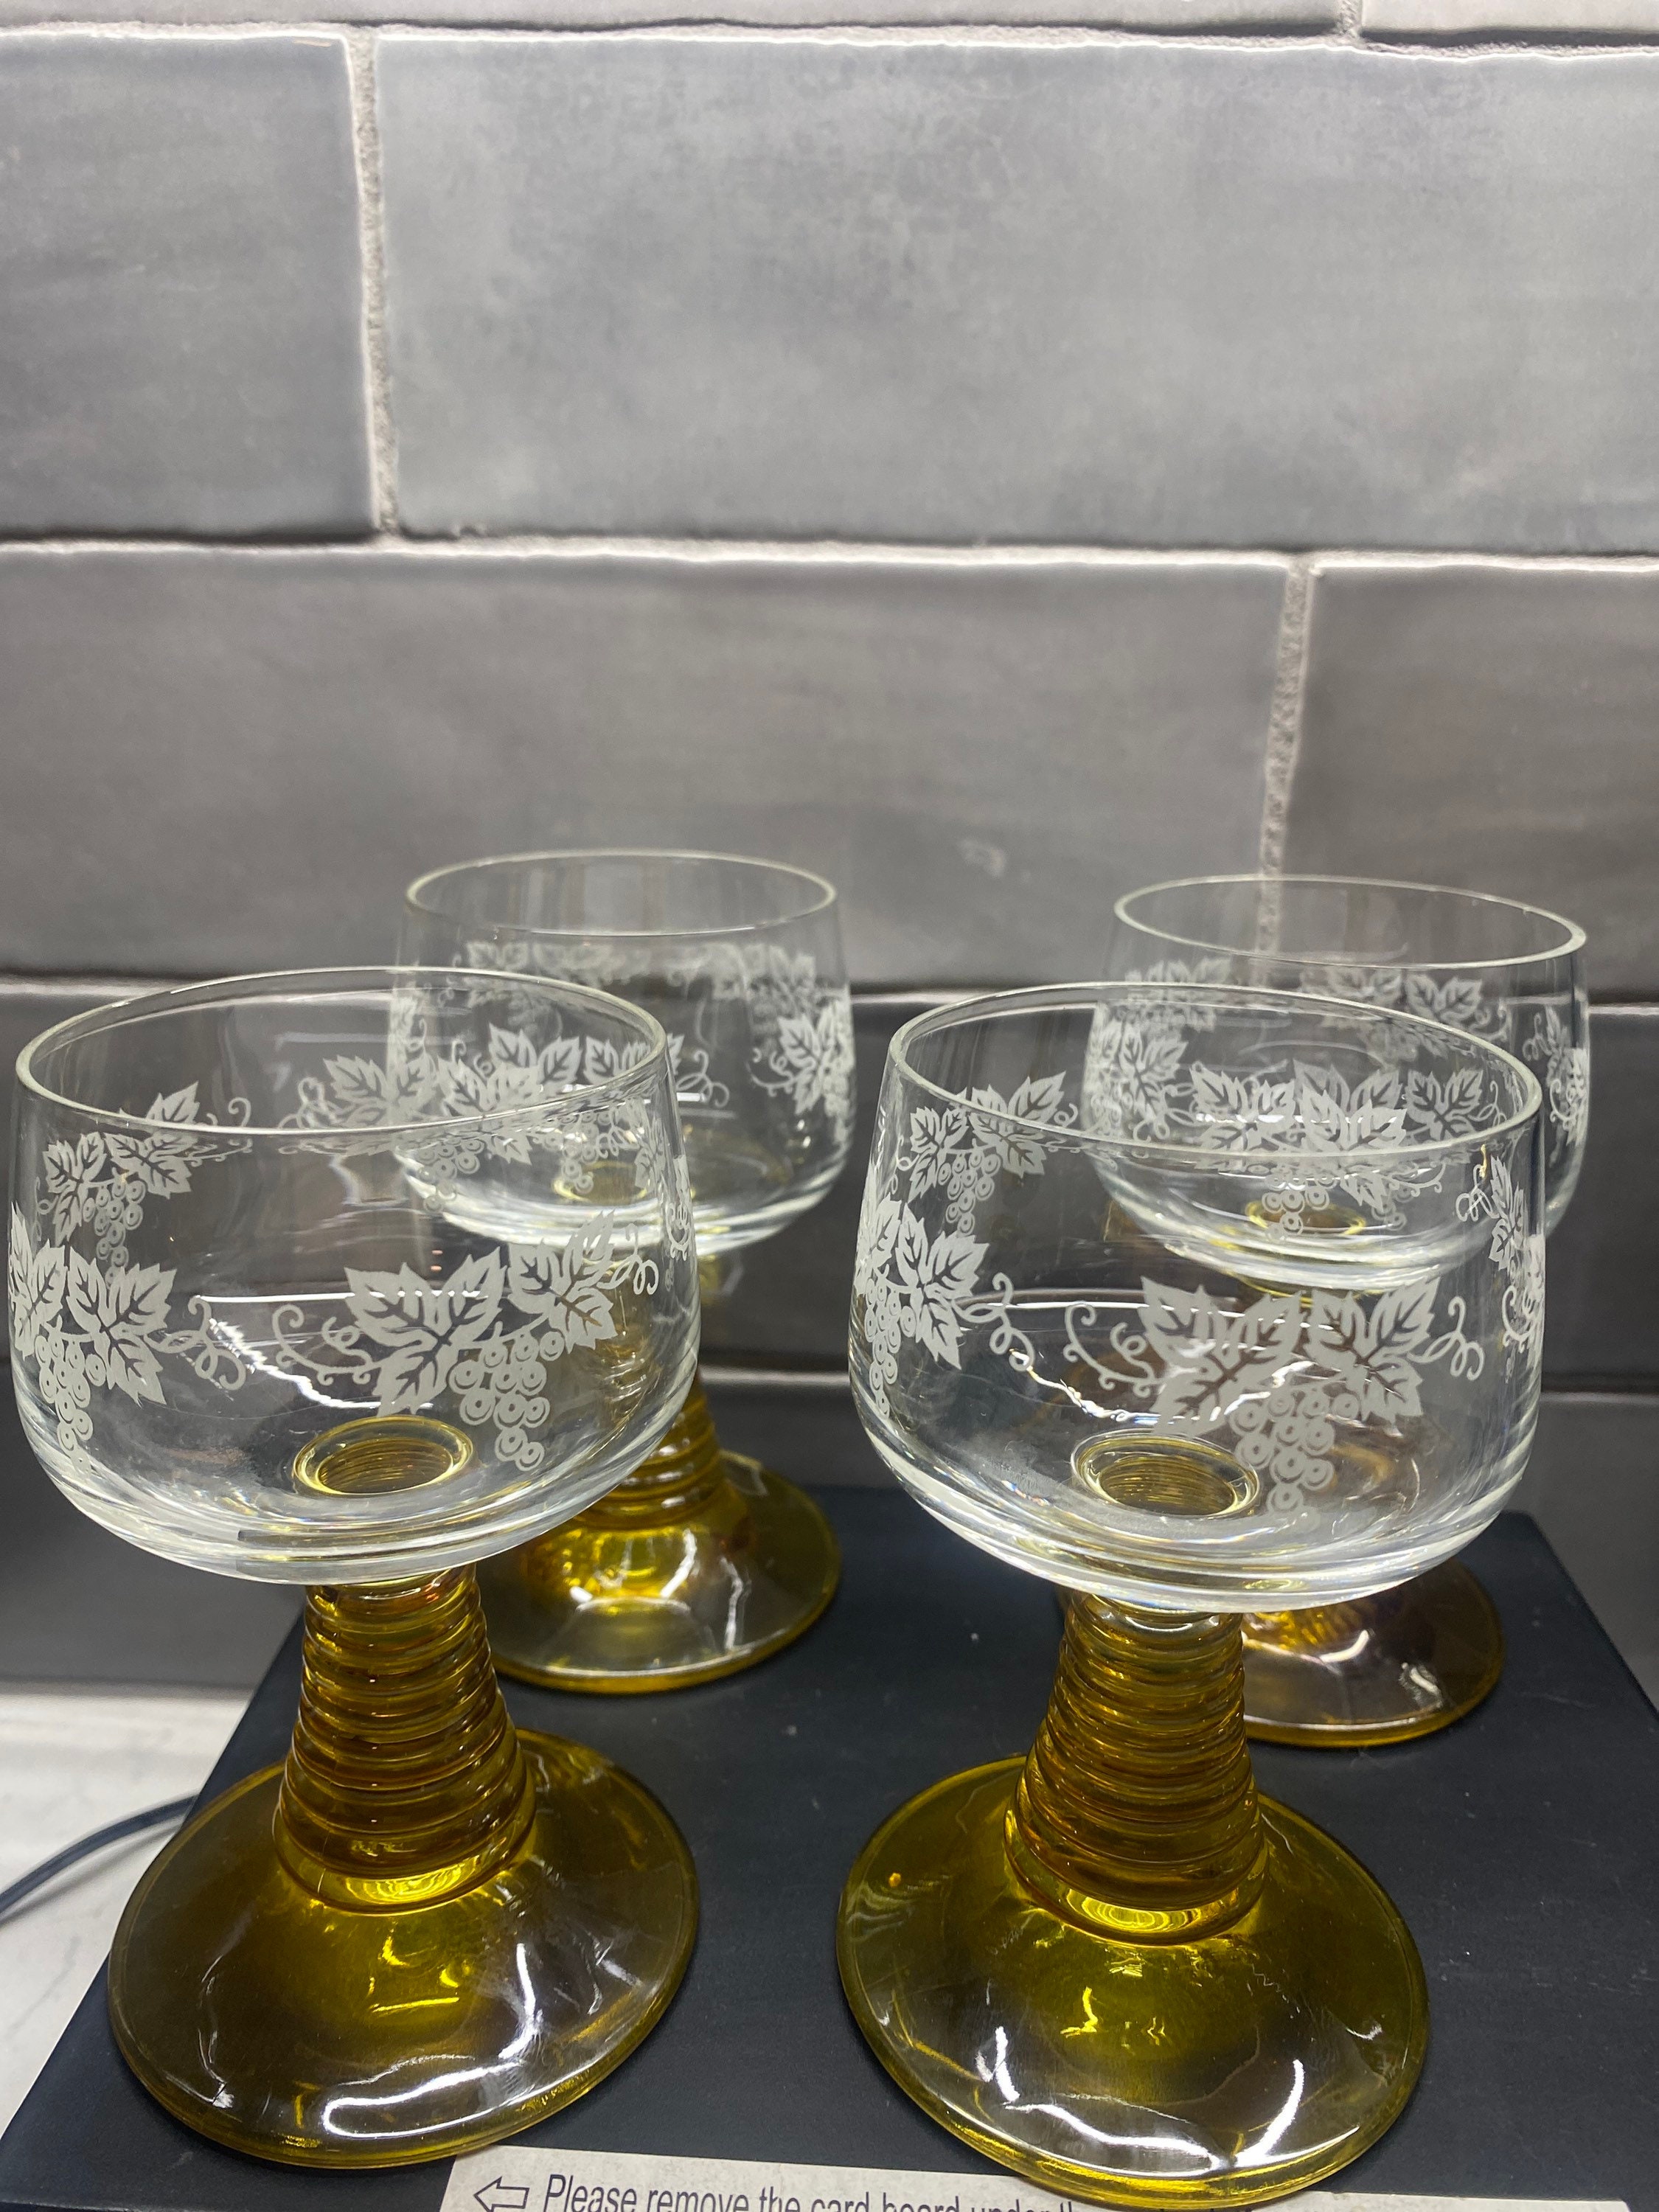 Vintage Amber Wine Glasses Set of 2 16.5 oz - Unique Stem Colored Burgundy  Goblet Glass - Premium St…See more Vintage Amber Wine Glasses Set of 2 16.5